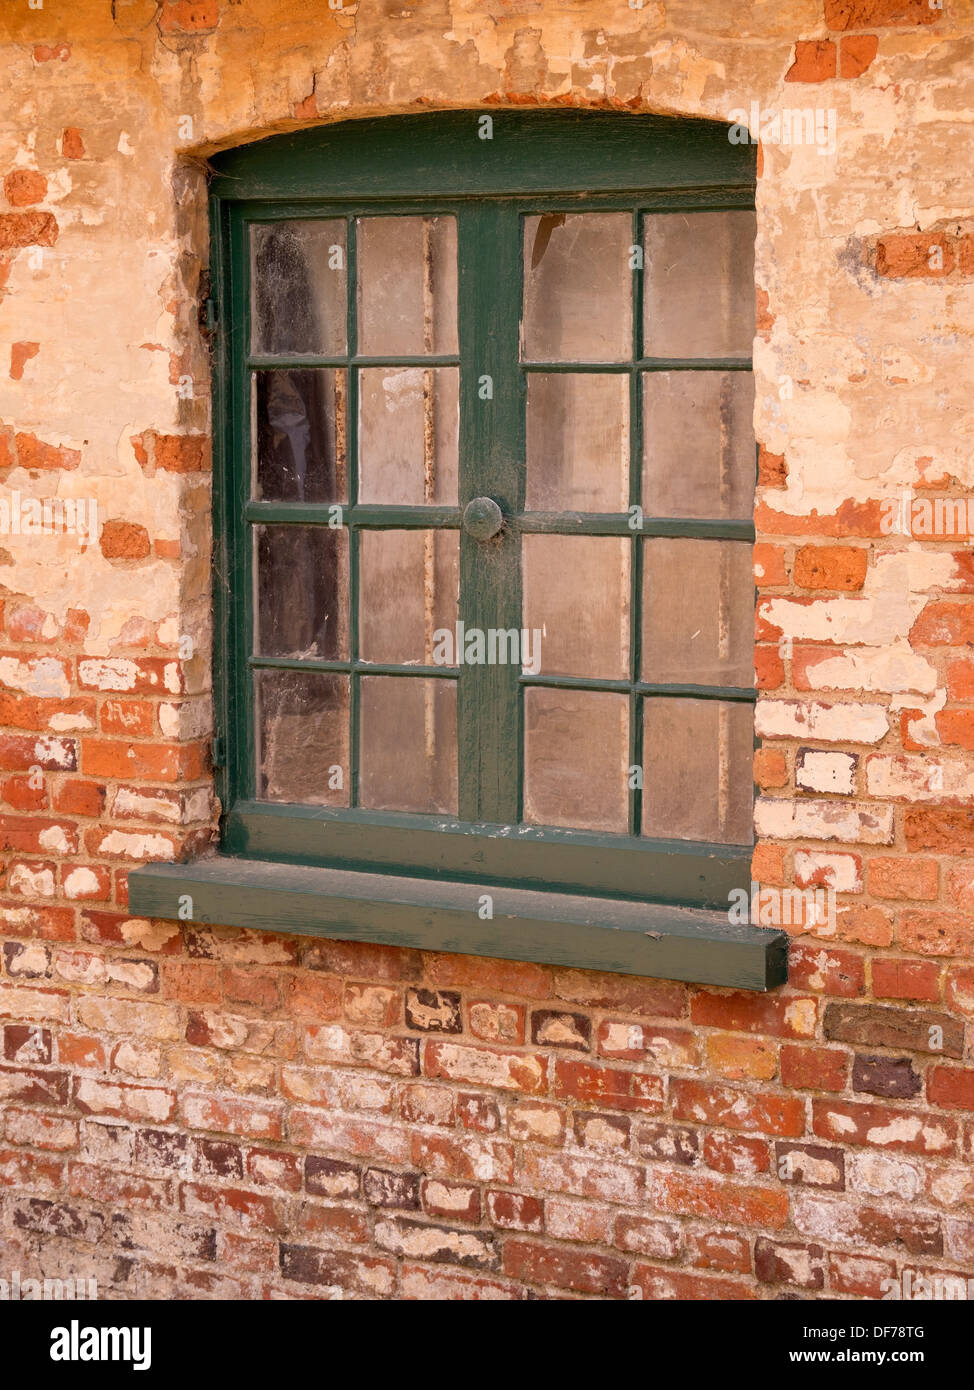 Vieille fenêtre en bois avec châssis peint en vert situé dans le vieux mur de brique rouge, Ticknall, Derbyshire, Angleterre, RU Banque D'Images